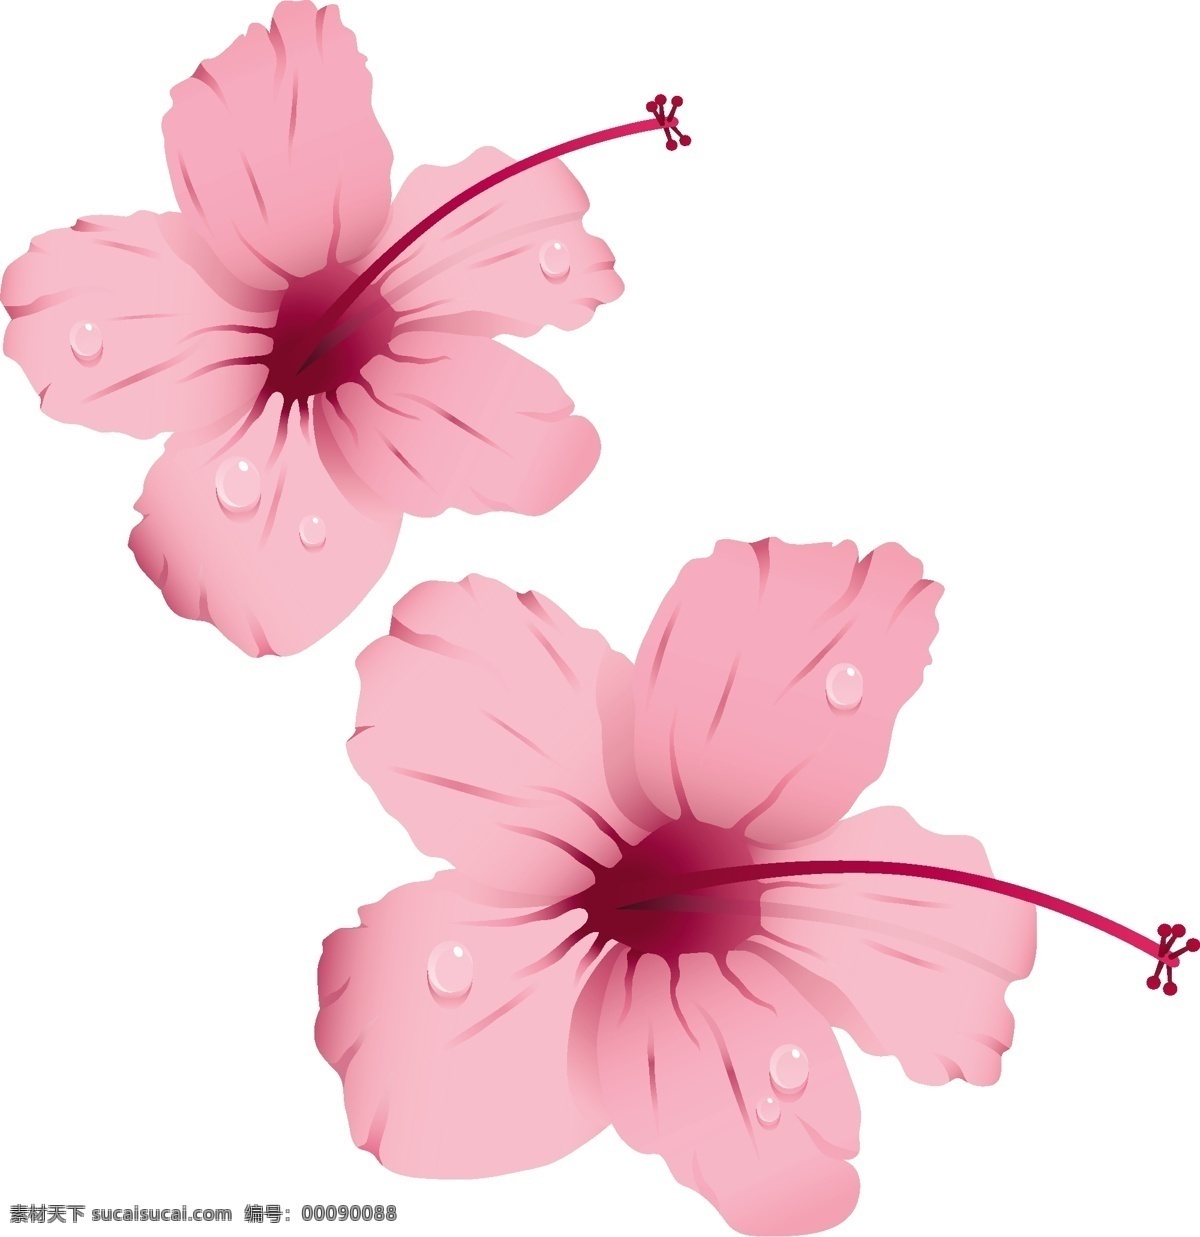 粉红色 花朵 露珠 粉红花朵 花朵素材 矢量花卉 水珠 矢量图 花纹花边